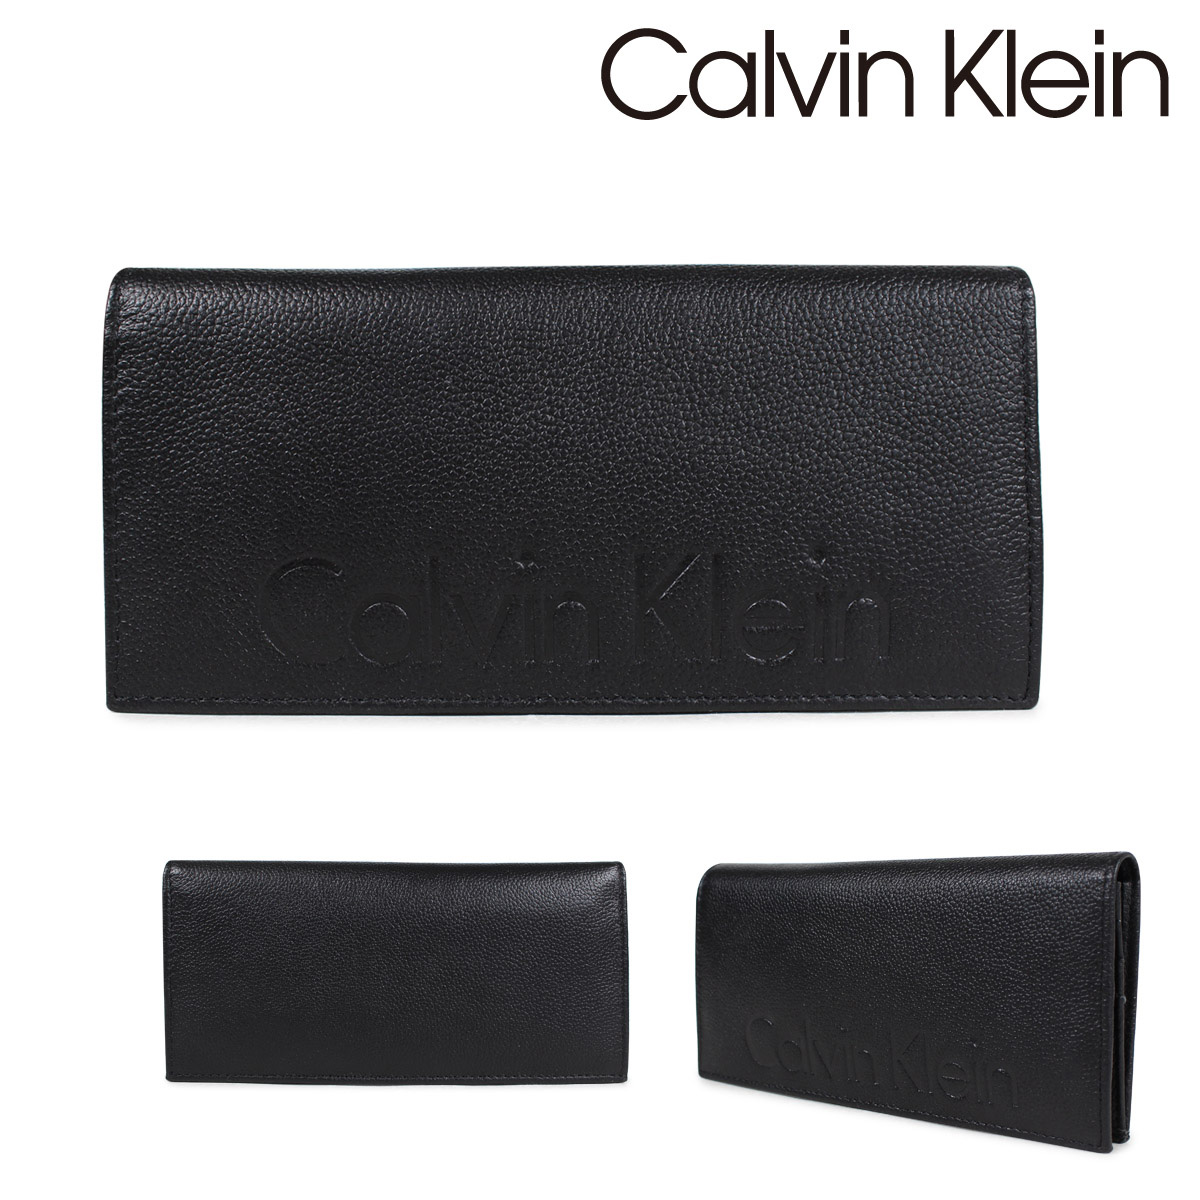 calvin klein purse for men